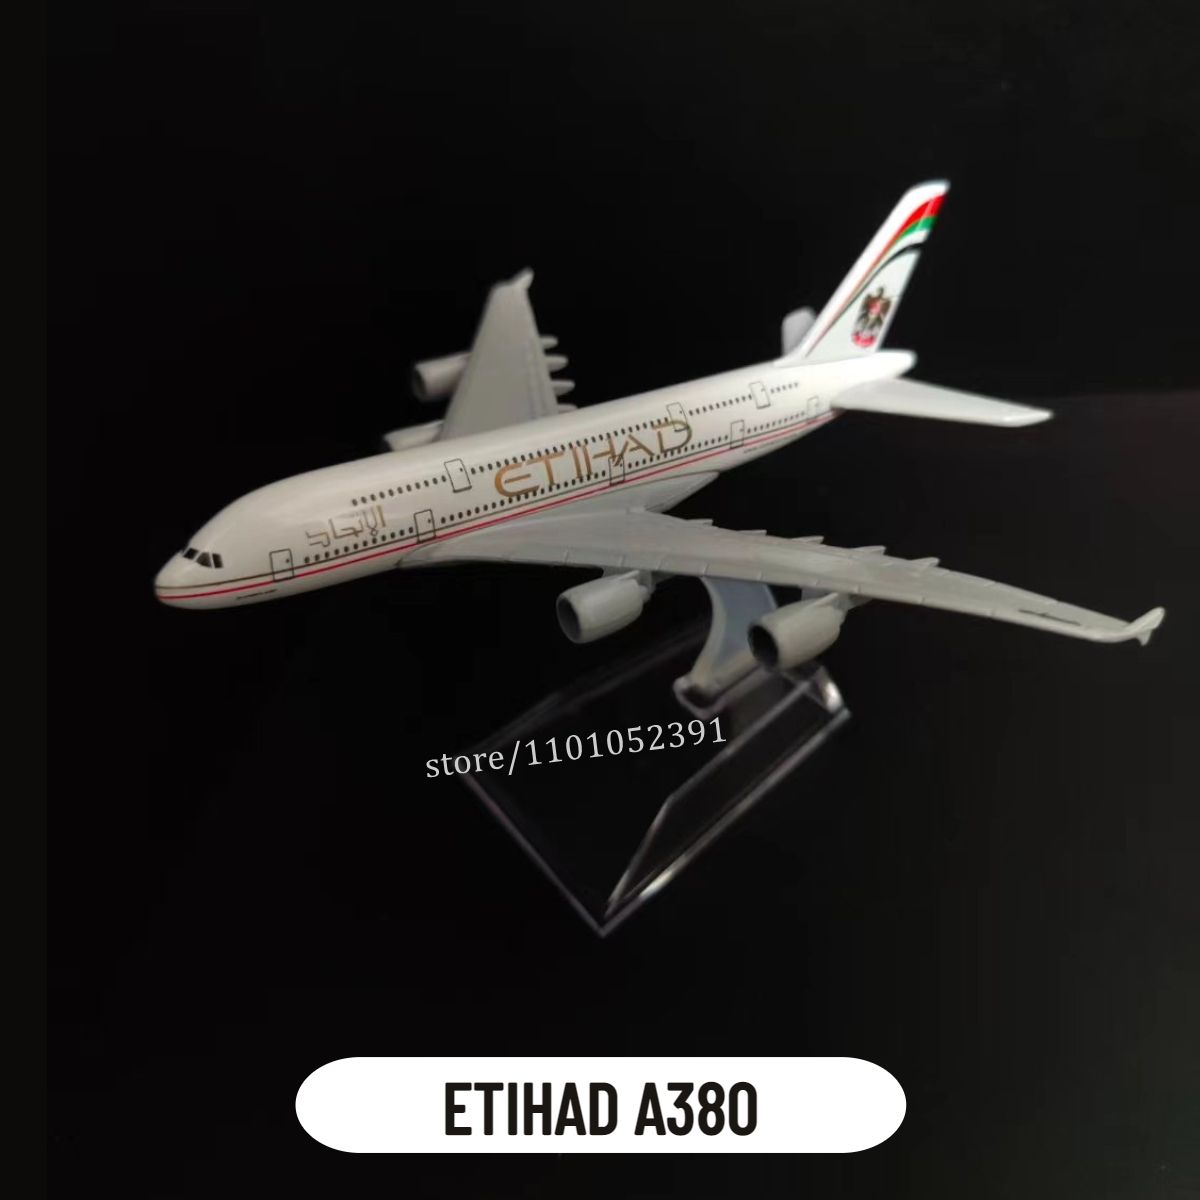 5.etihad A380